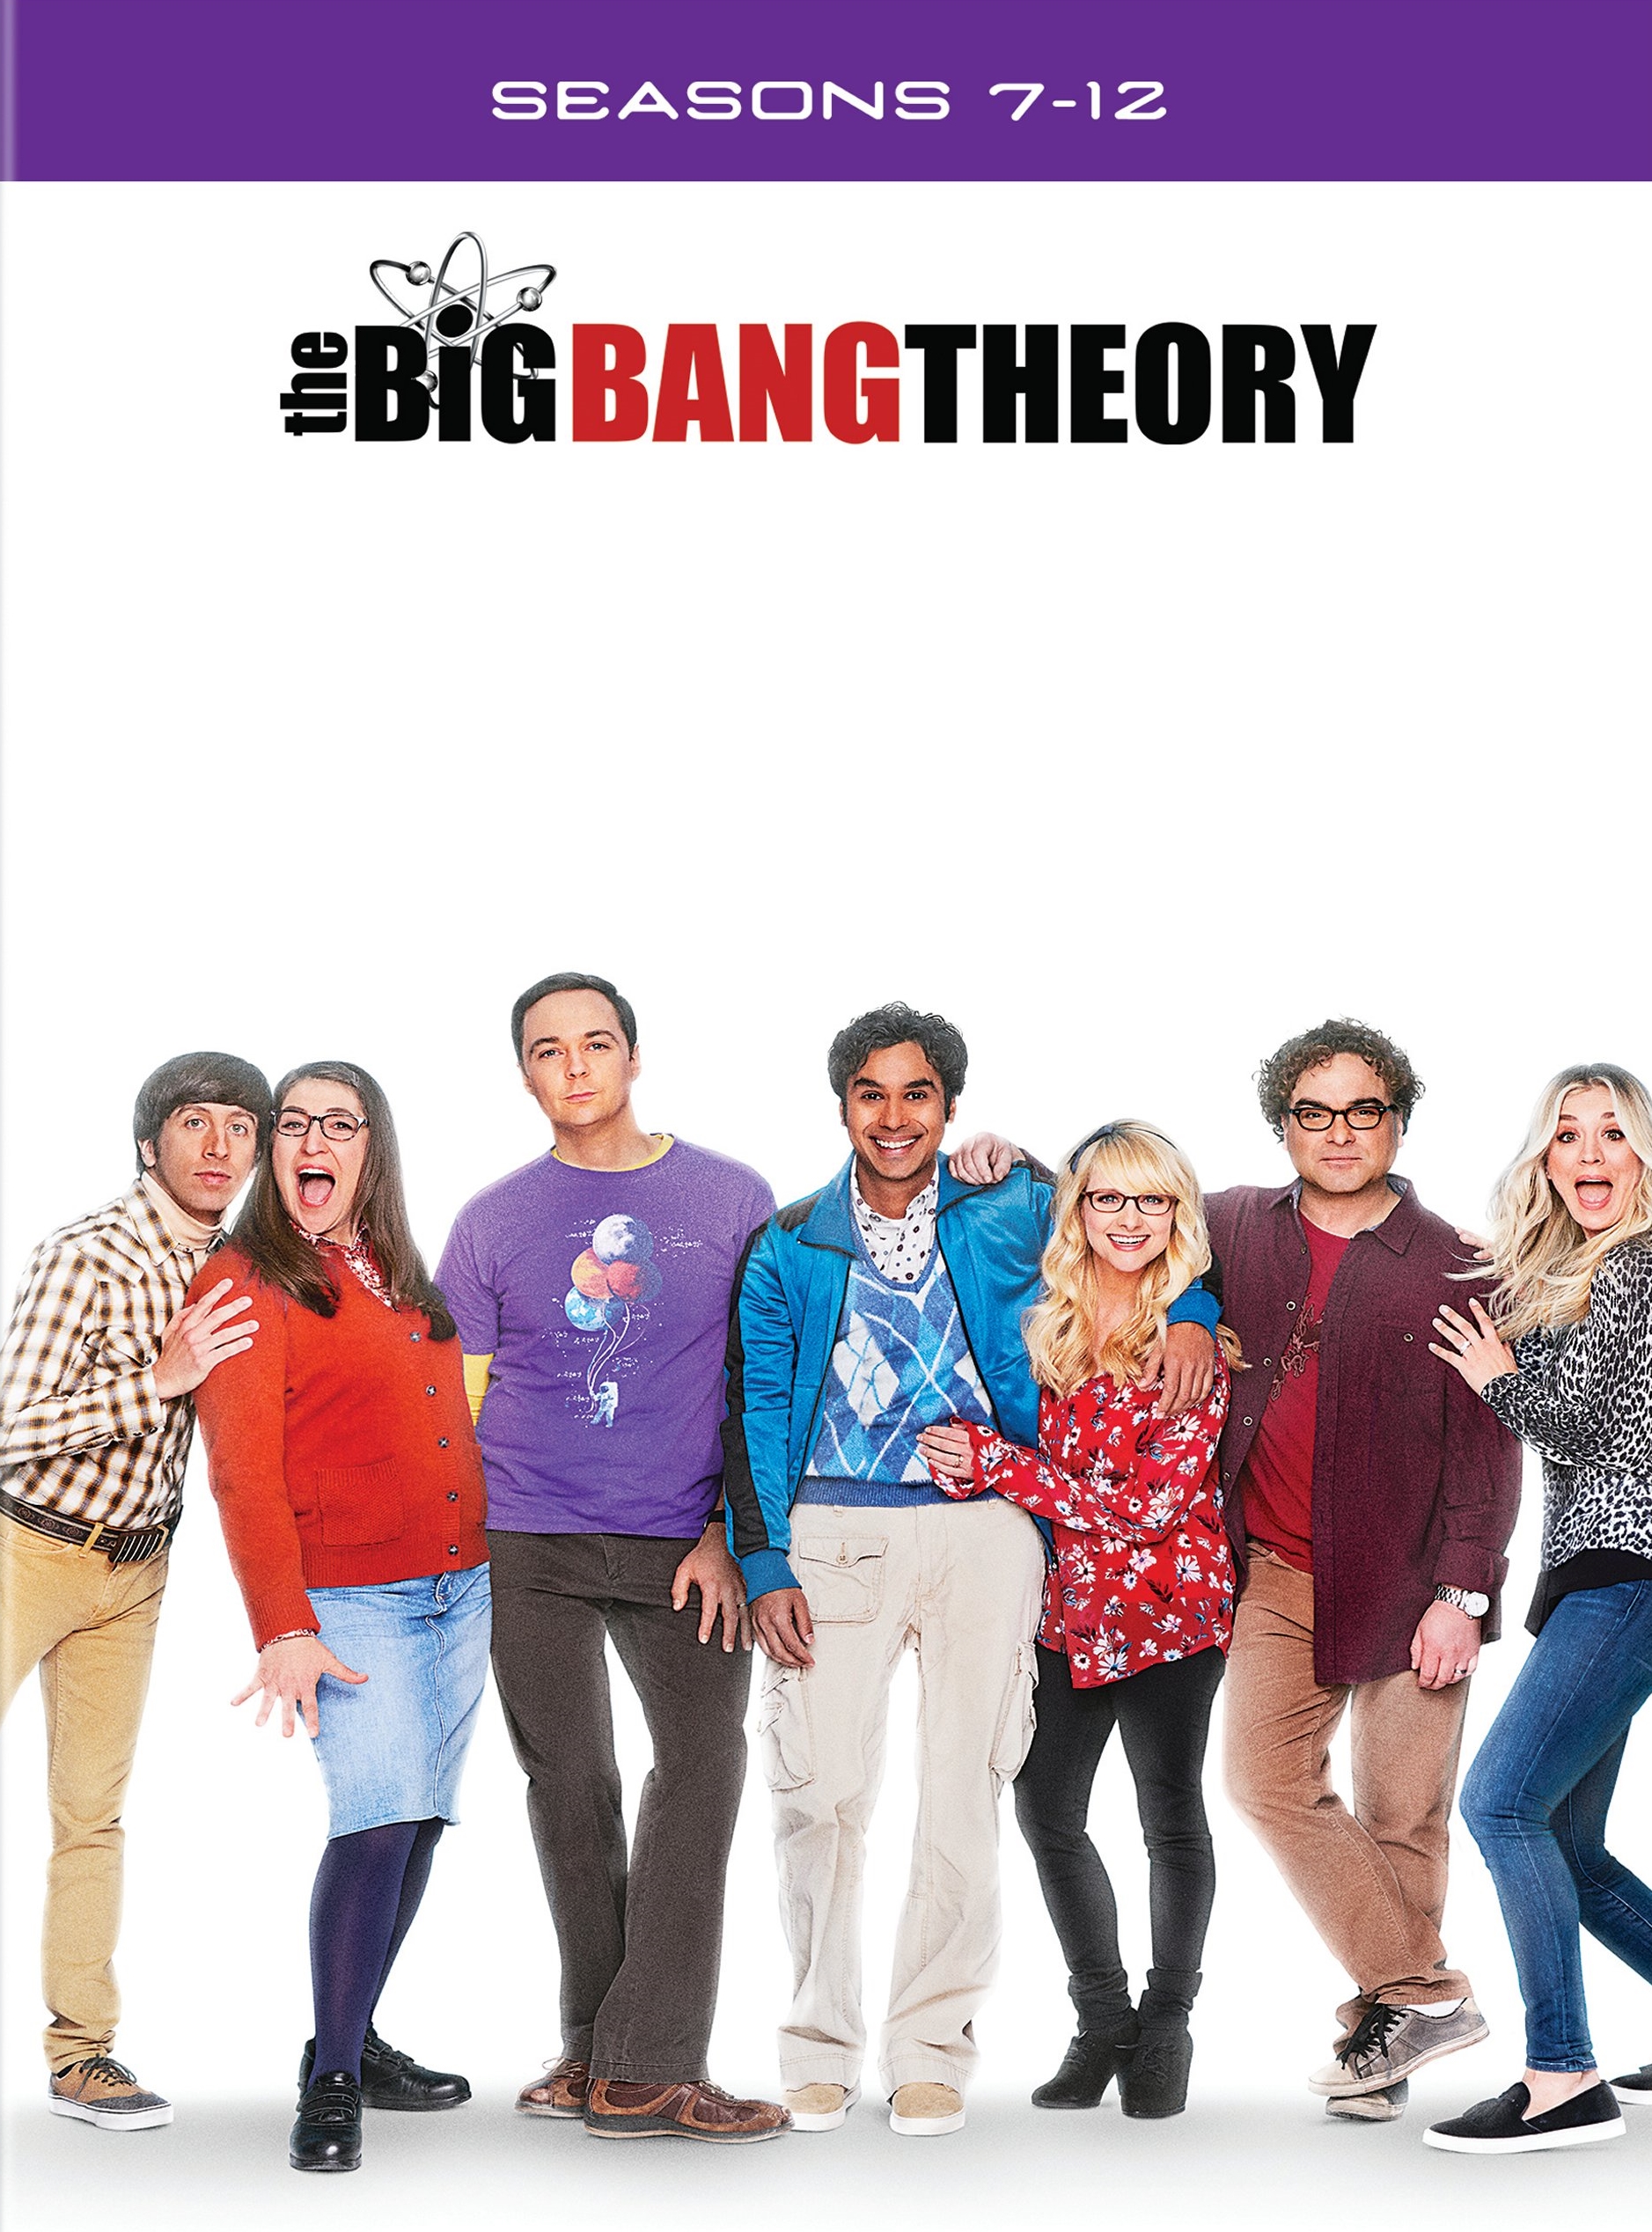 The Big Bang Theory: Seasons 7-12 Best Buy